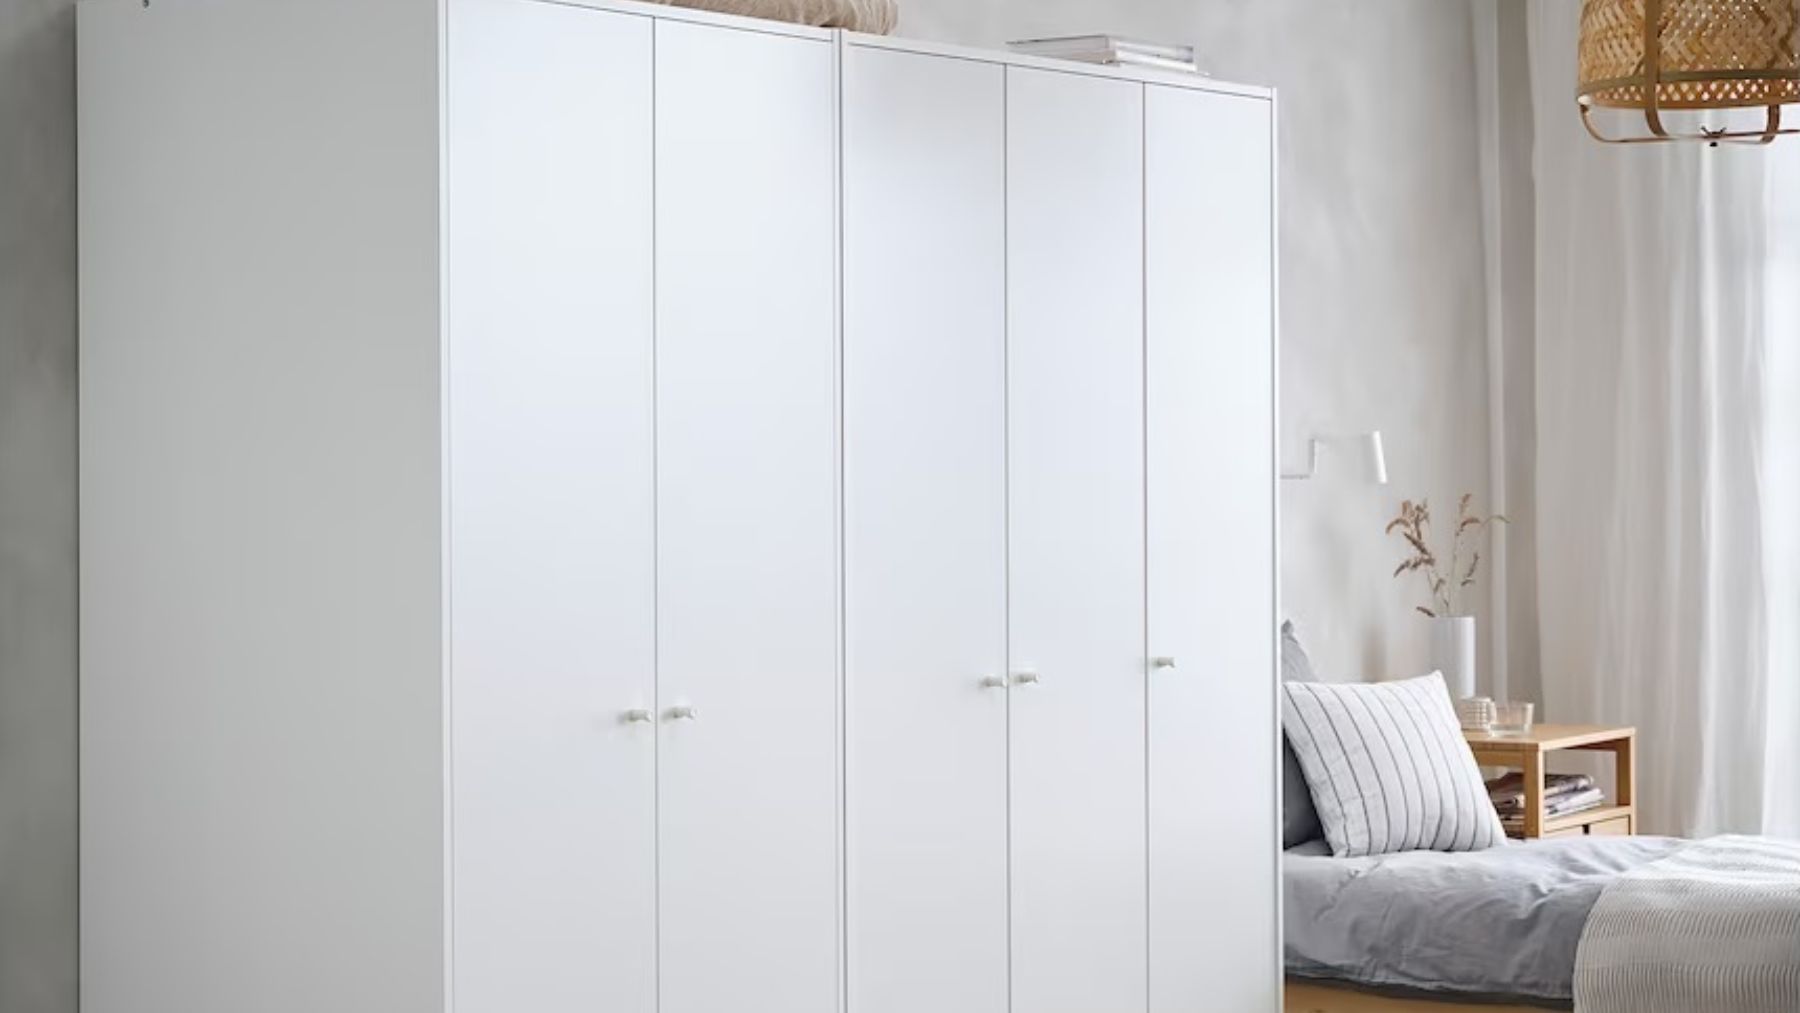 Estos son los armarios de Ikea perfectos para tener tu casa